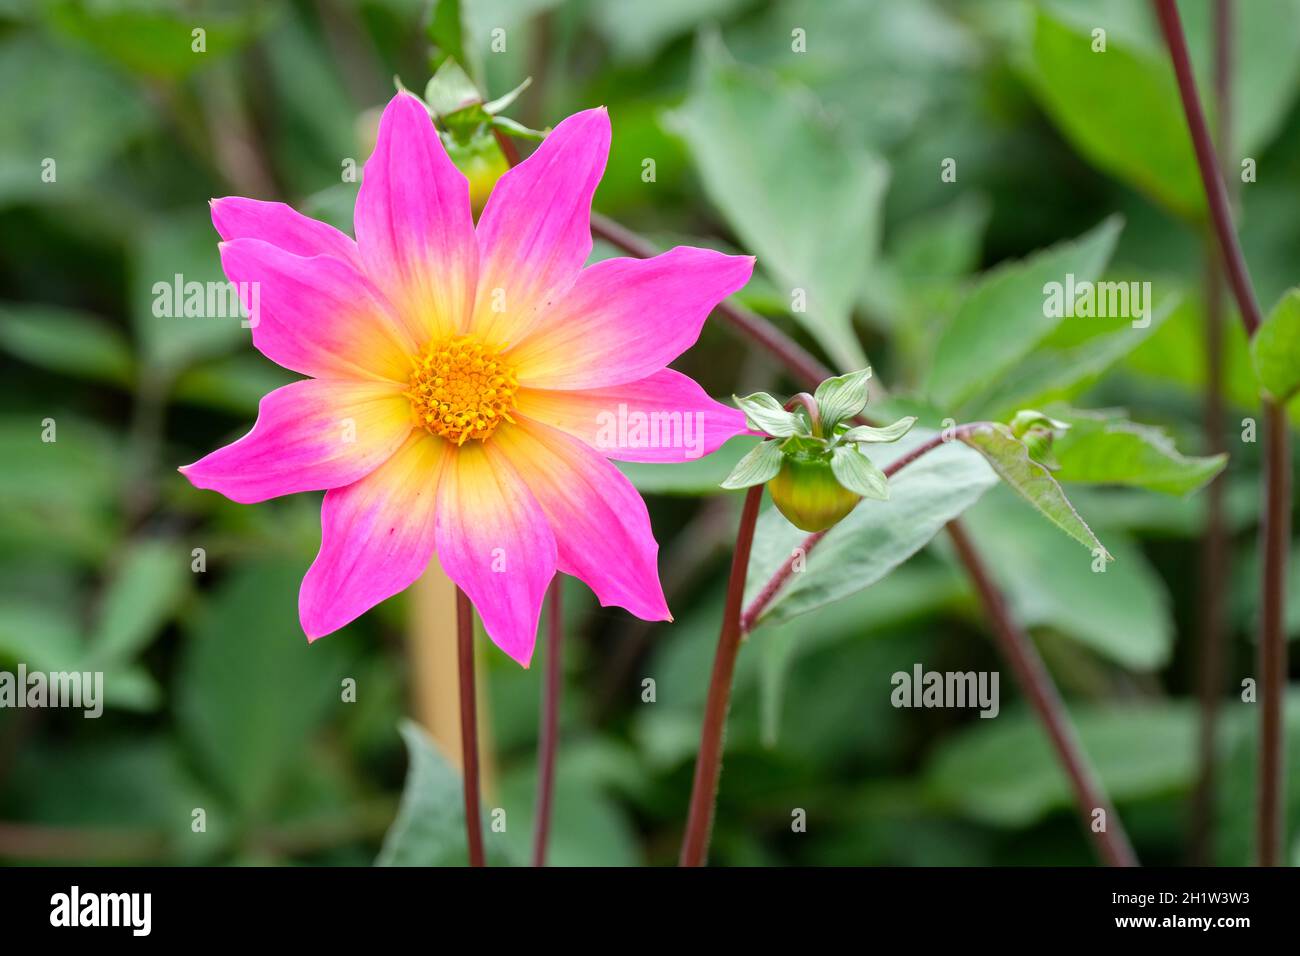 Einblütige Sorte, Dahlia 'Bright Eyes'. Lila-rosa Blüten in der Mitte zu gelb verblassen. Stockfoto